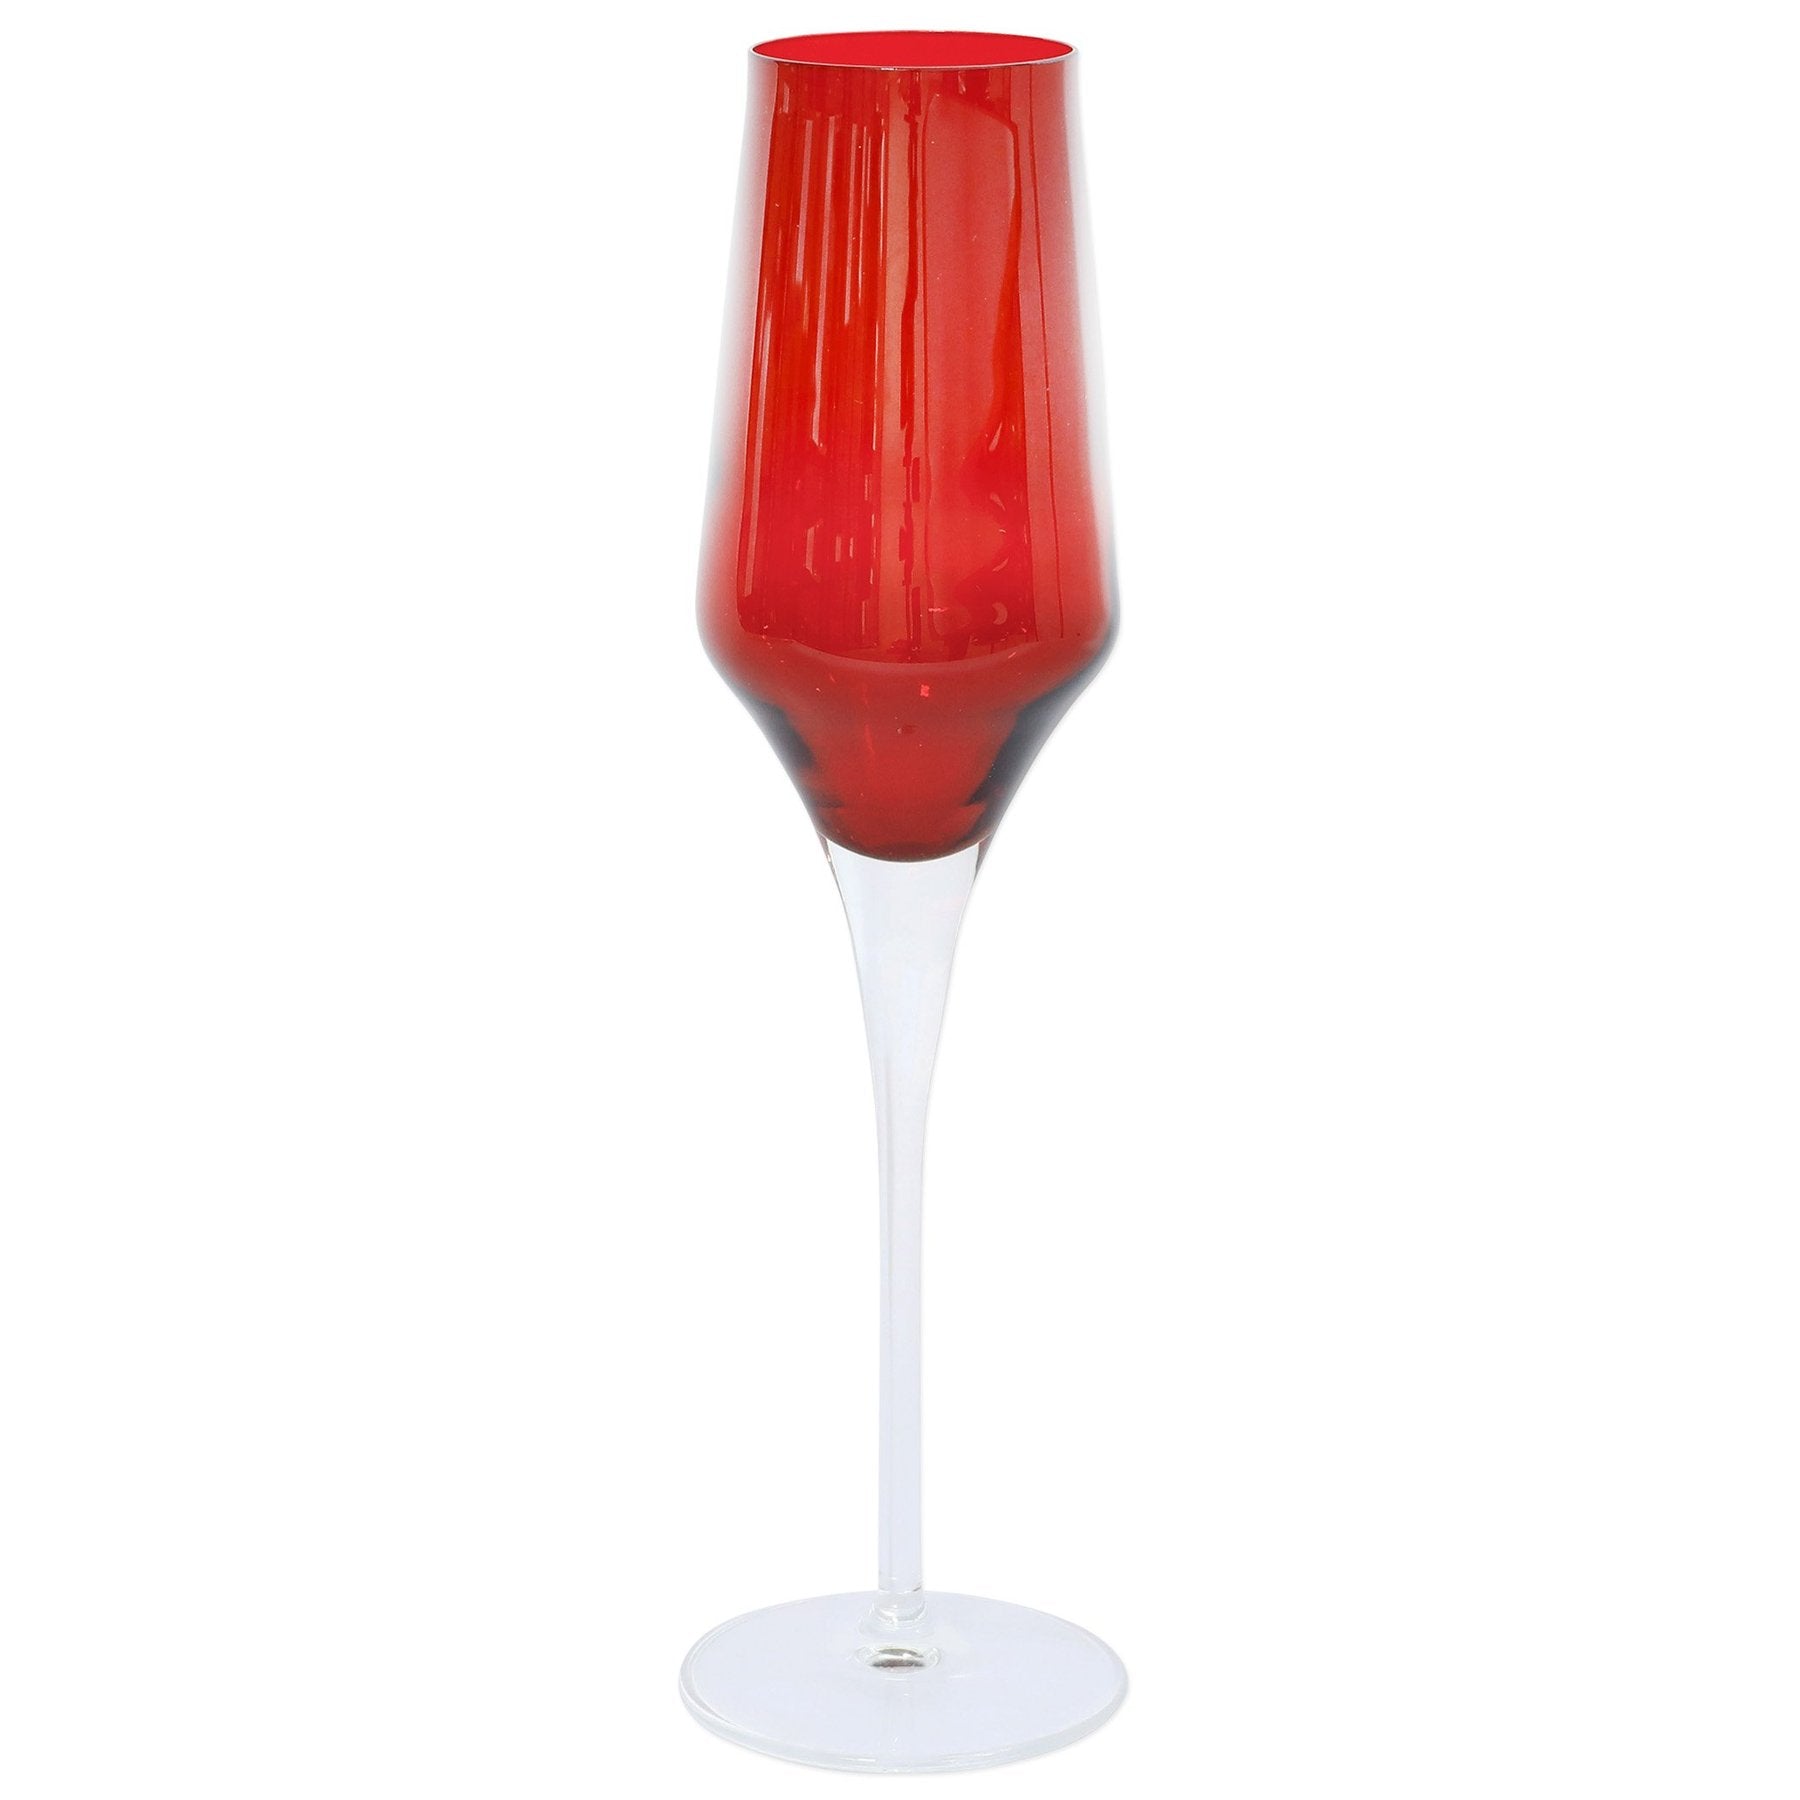 Contessa Red Champagne Glass